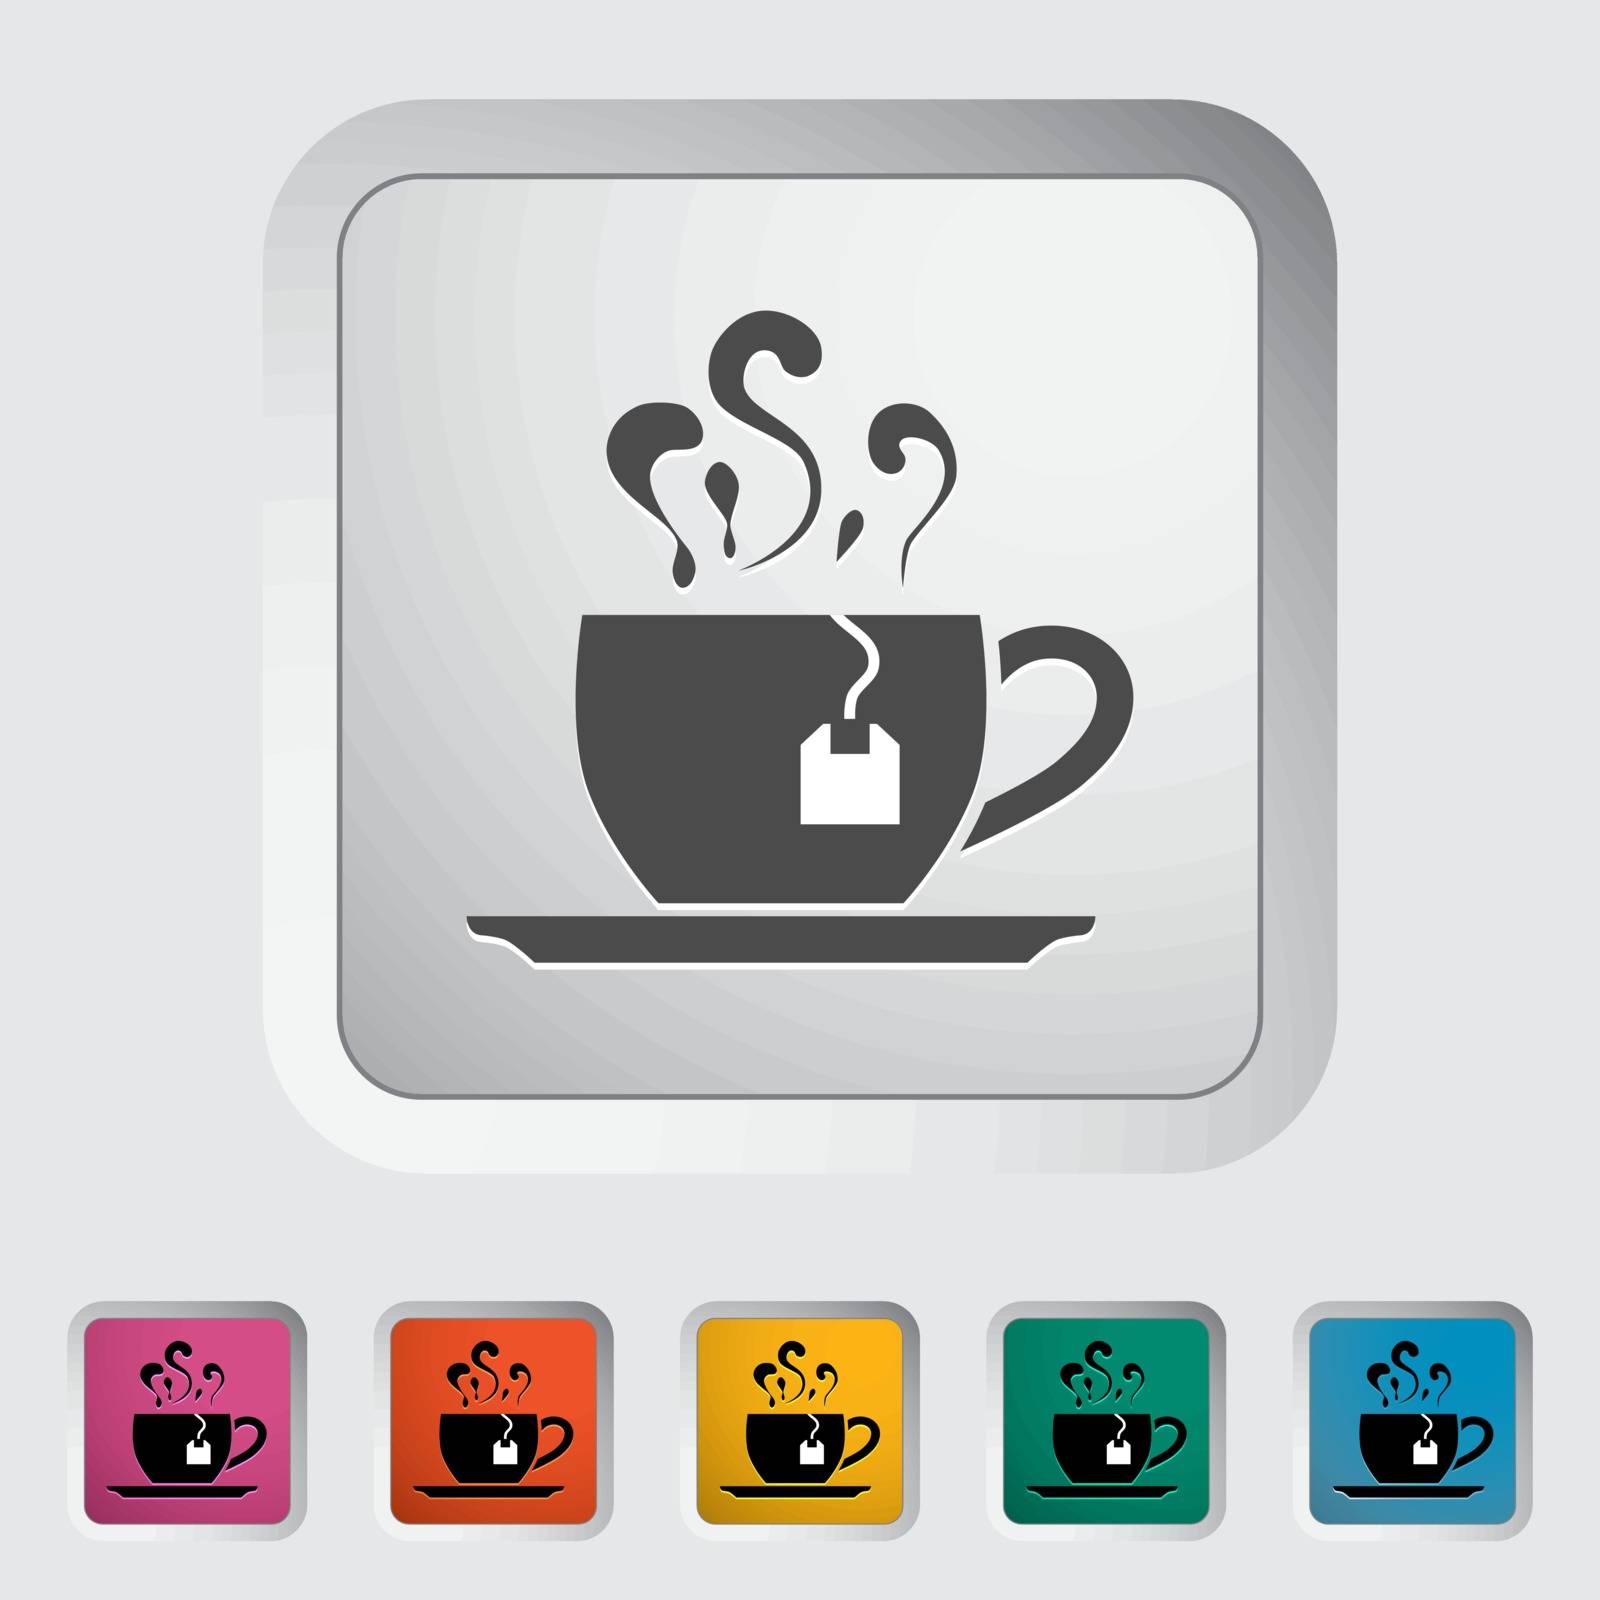 Tea. Single flat icon on the button. Vector illustration.